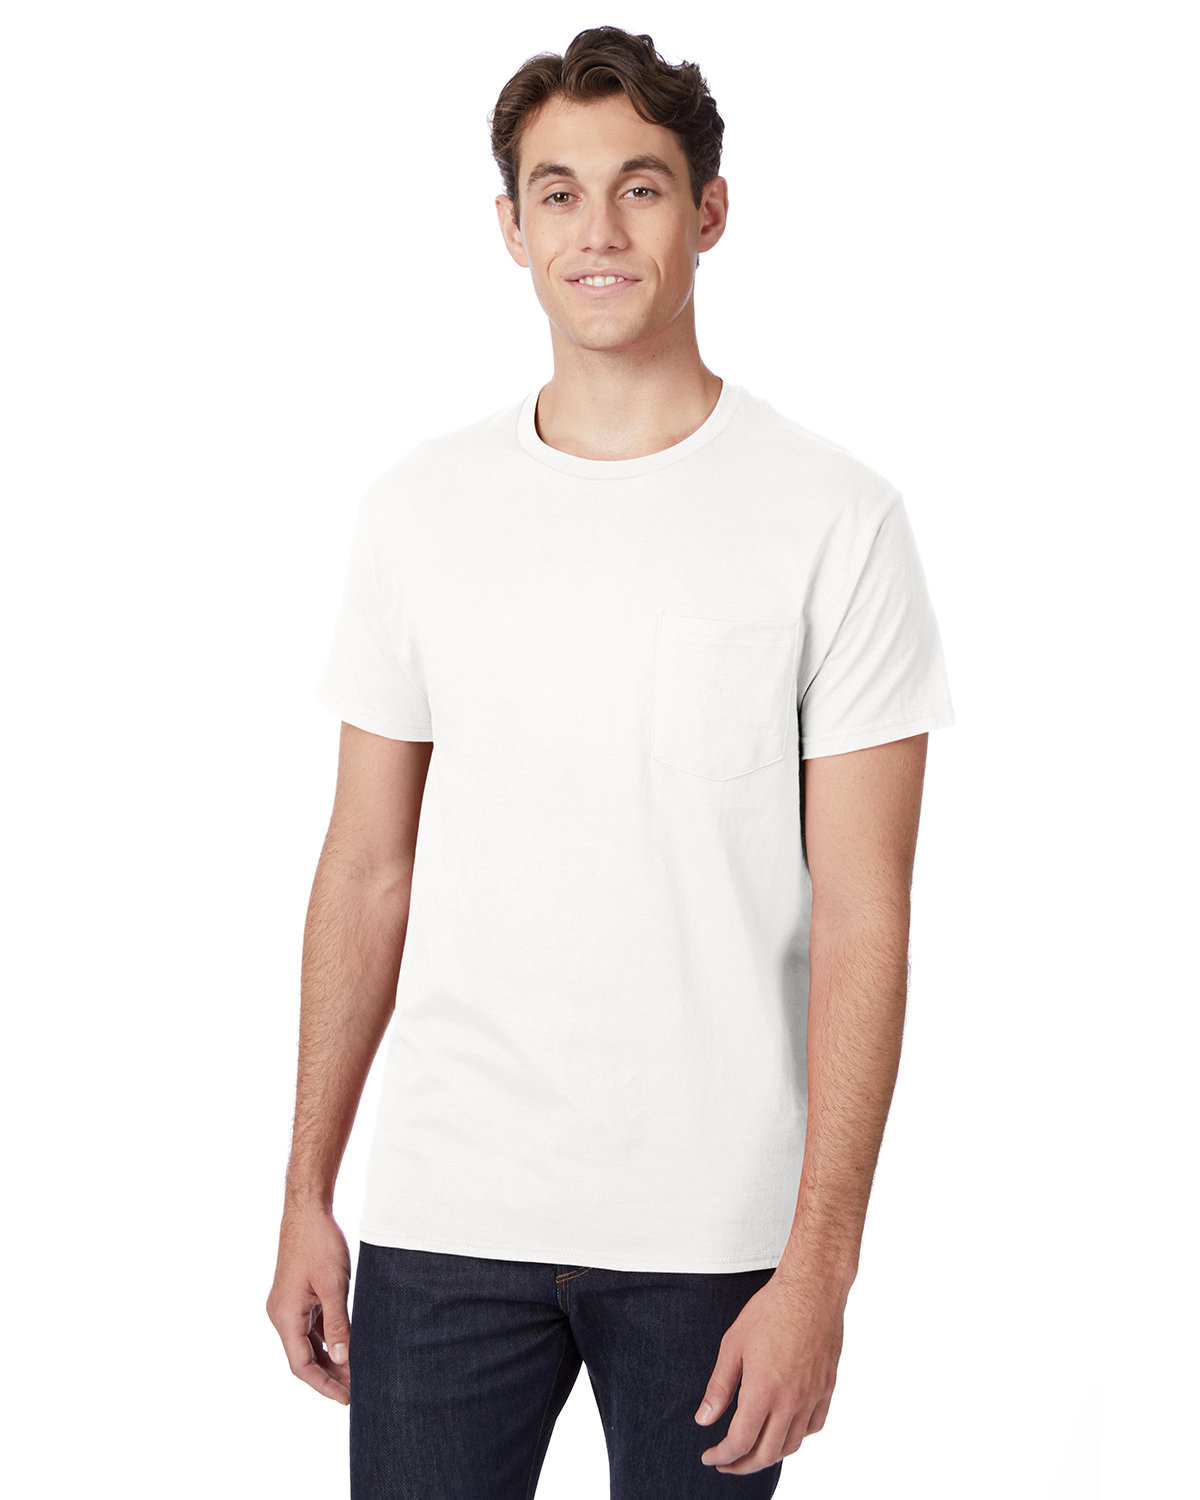 Hanes Men's Authentic-T Pocket T-Shirt white 